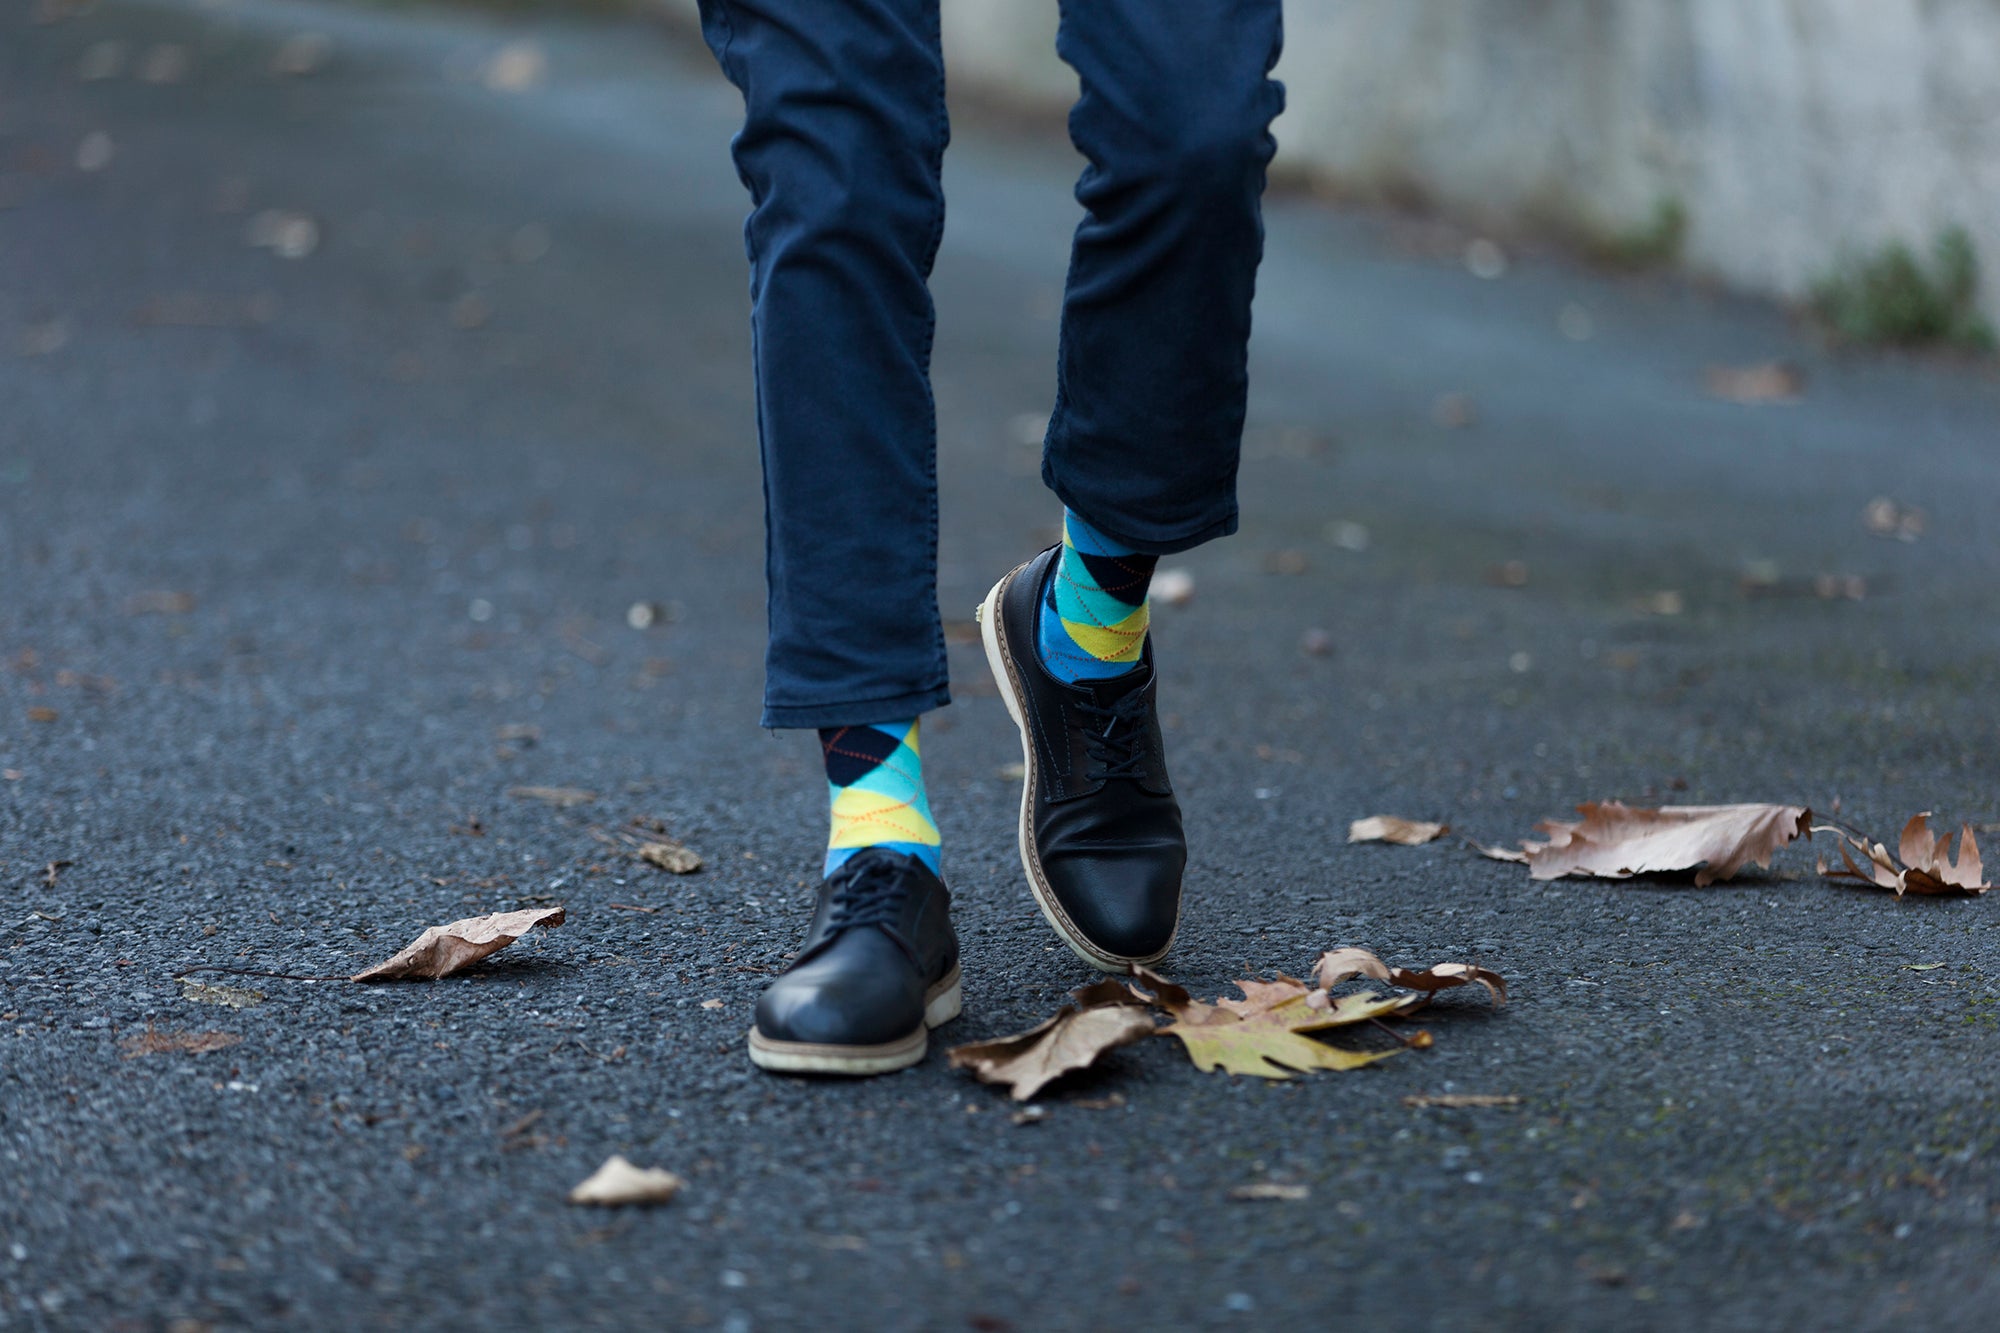 Men's Aspen Gold Argyle Socks